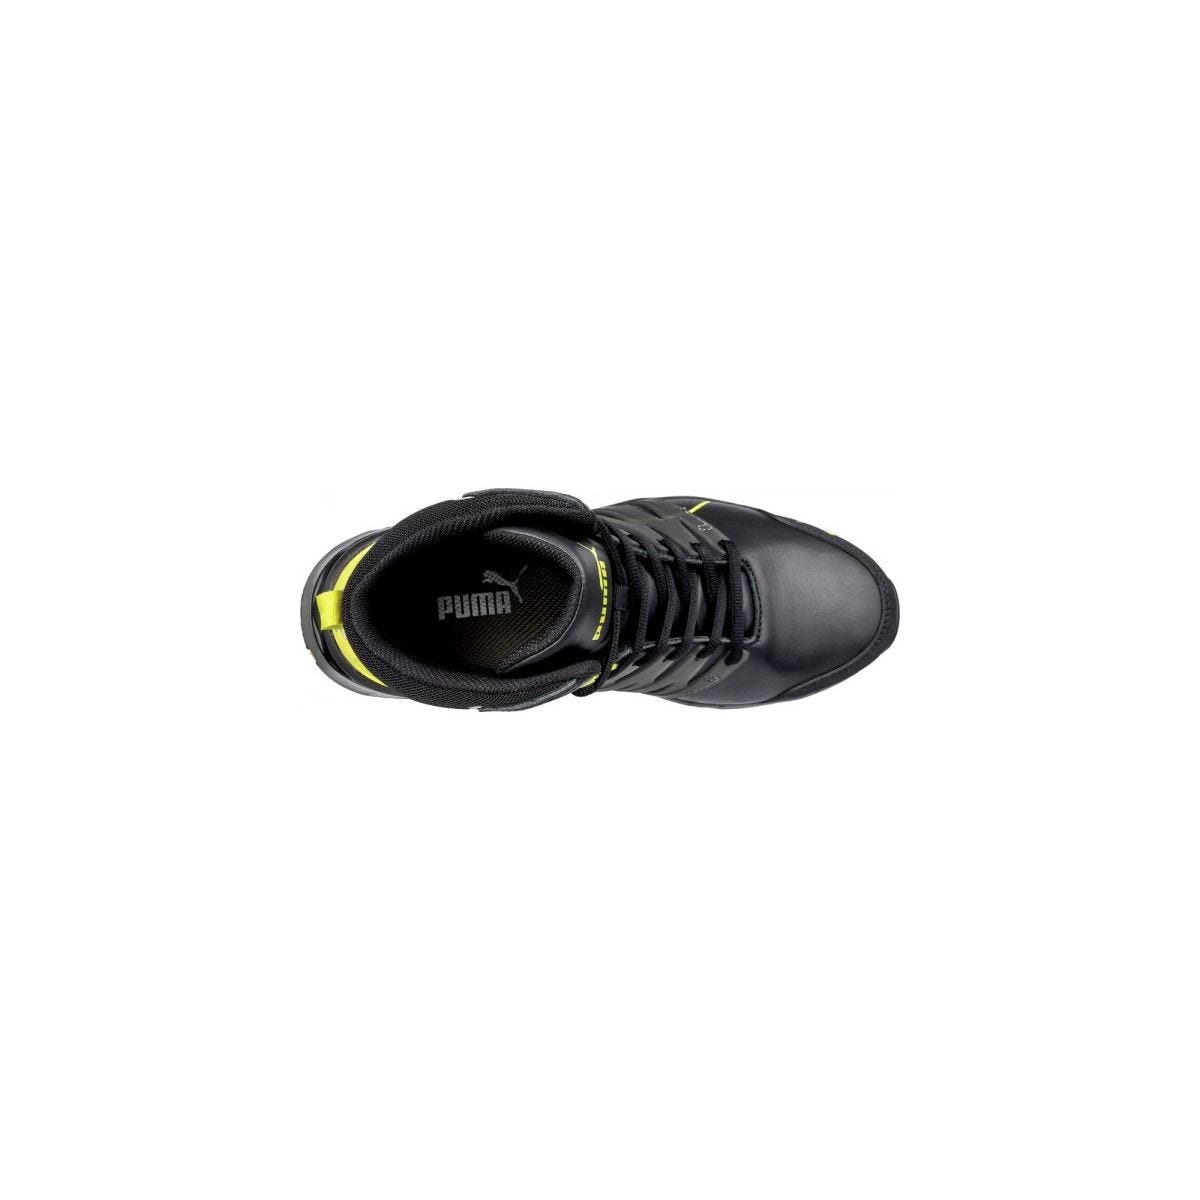 Chaussures de sécurité Velocity 2.0 YELLOW MID S3 - Puma - Taille 45 3